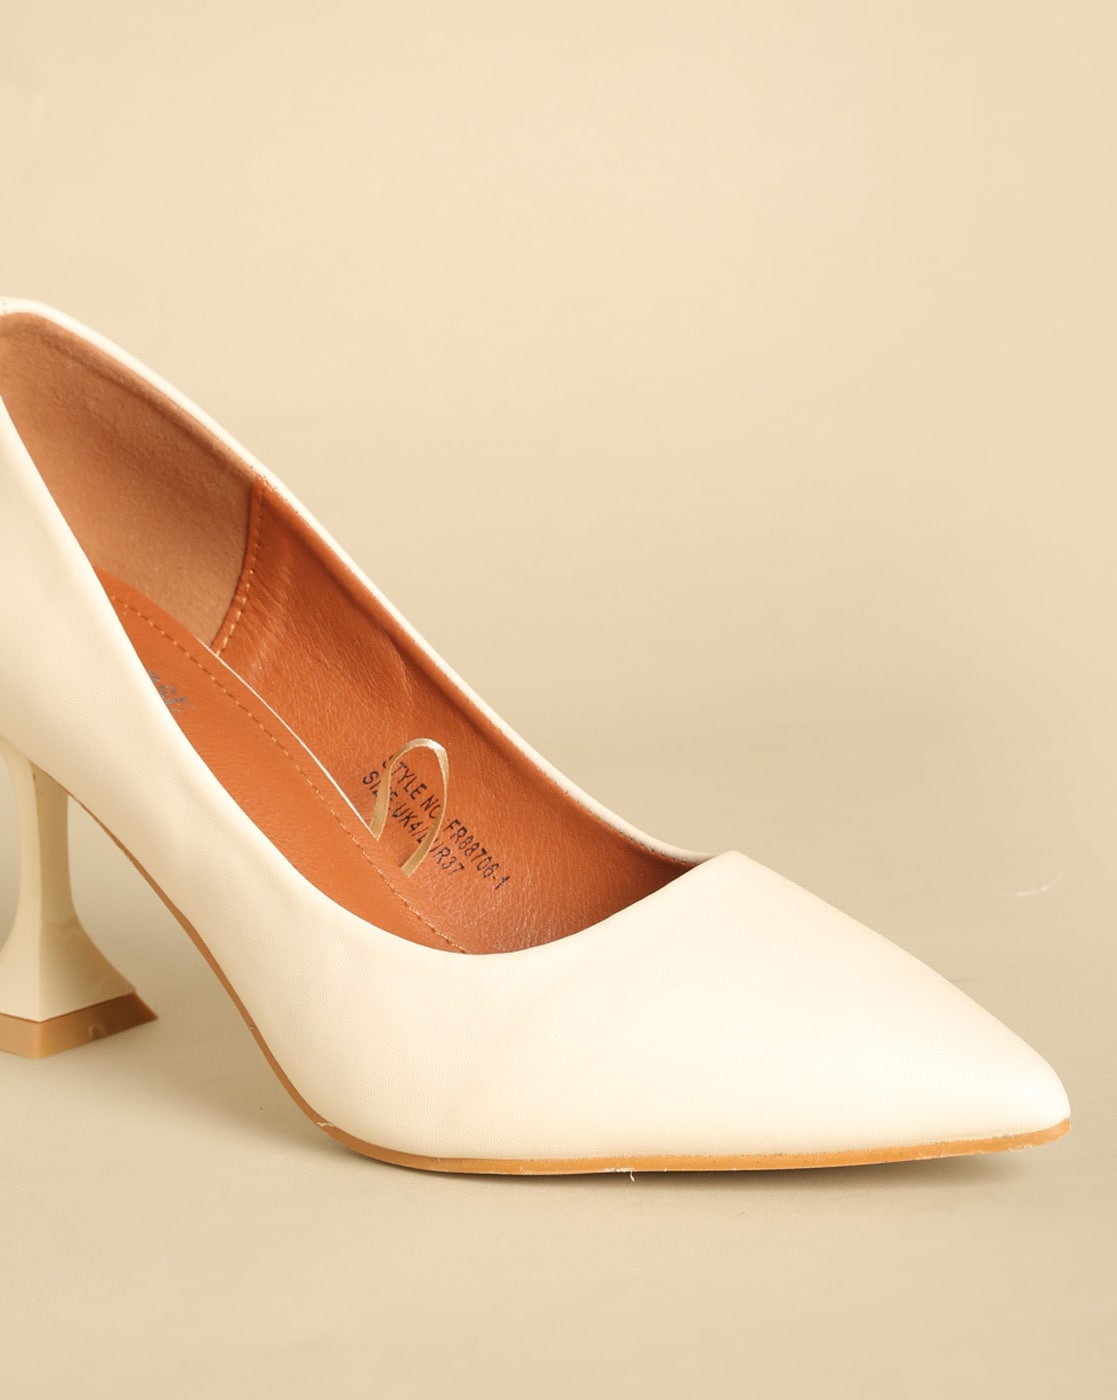 Renata Dark Beige/Gold Textile Court Shoe Size 3